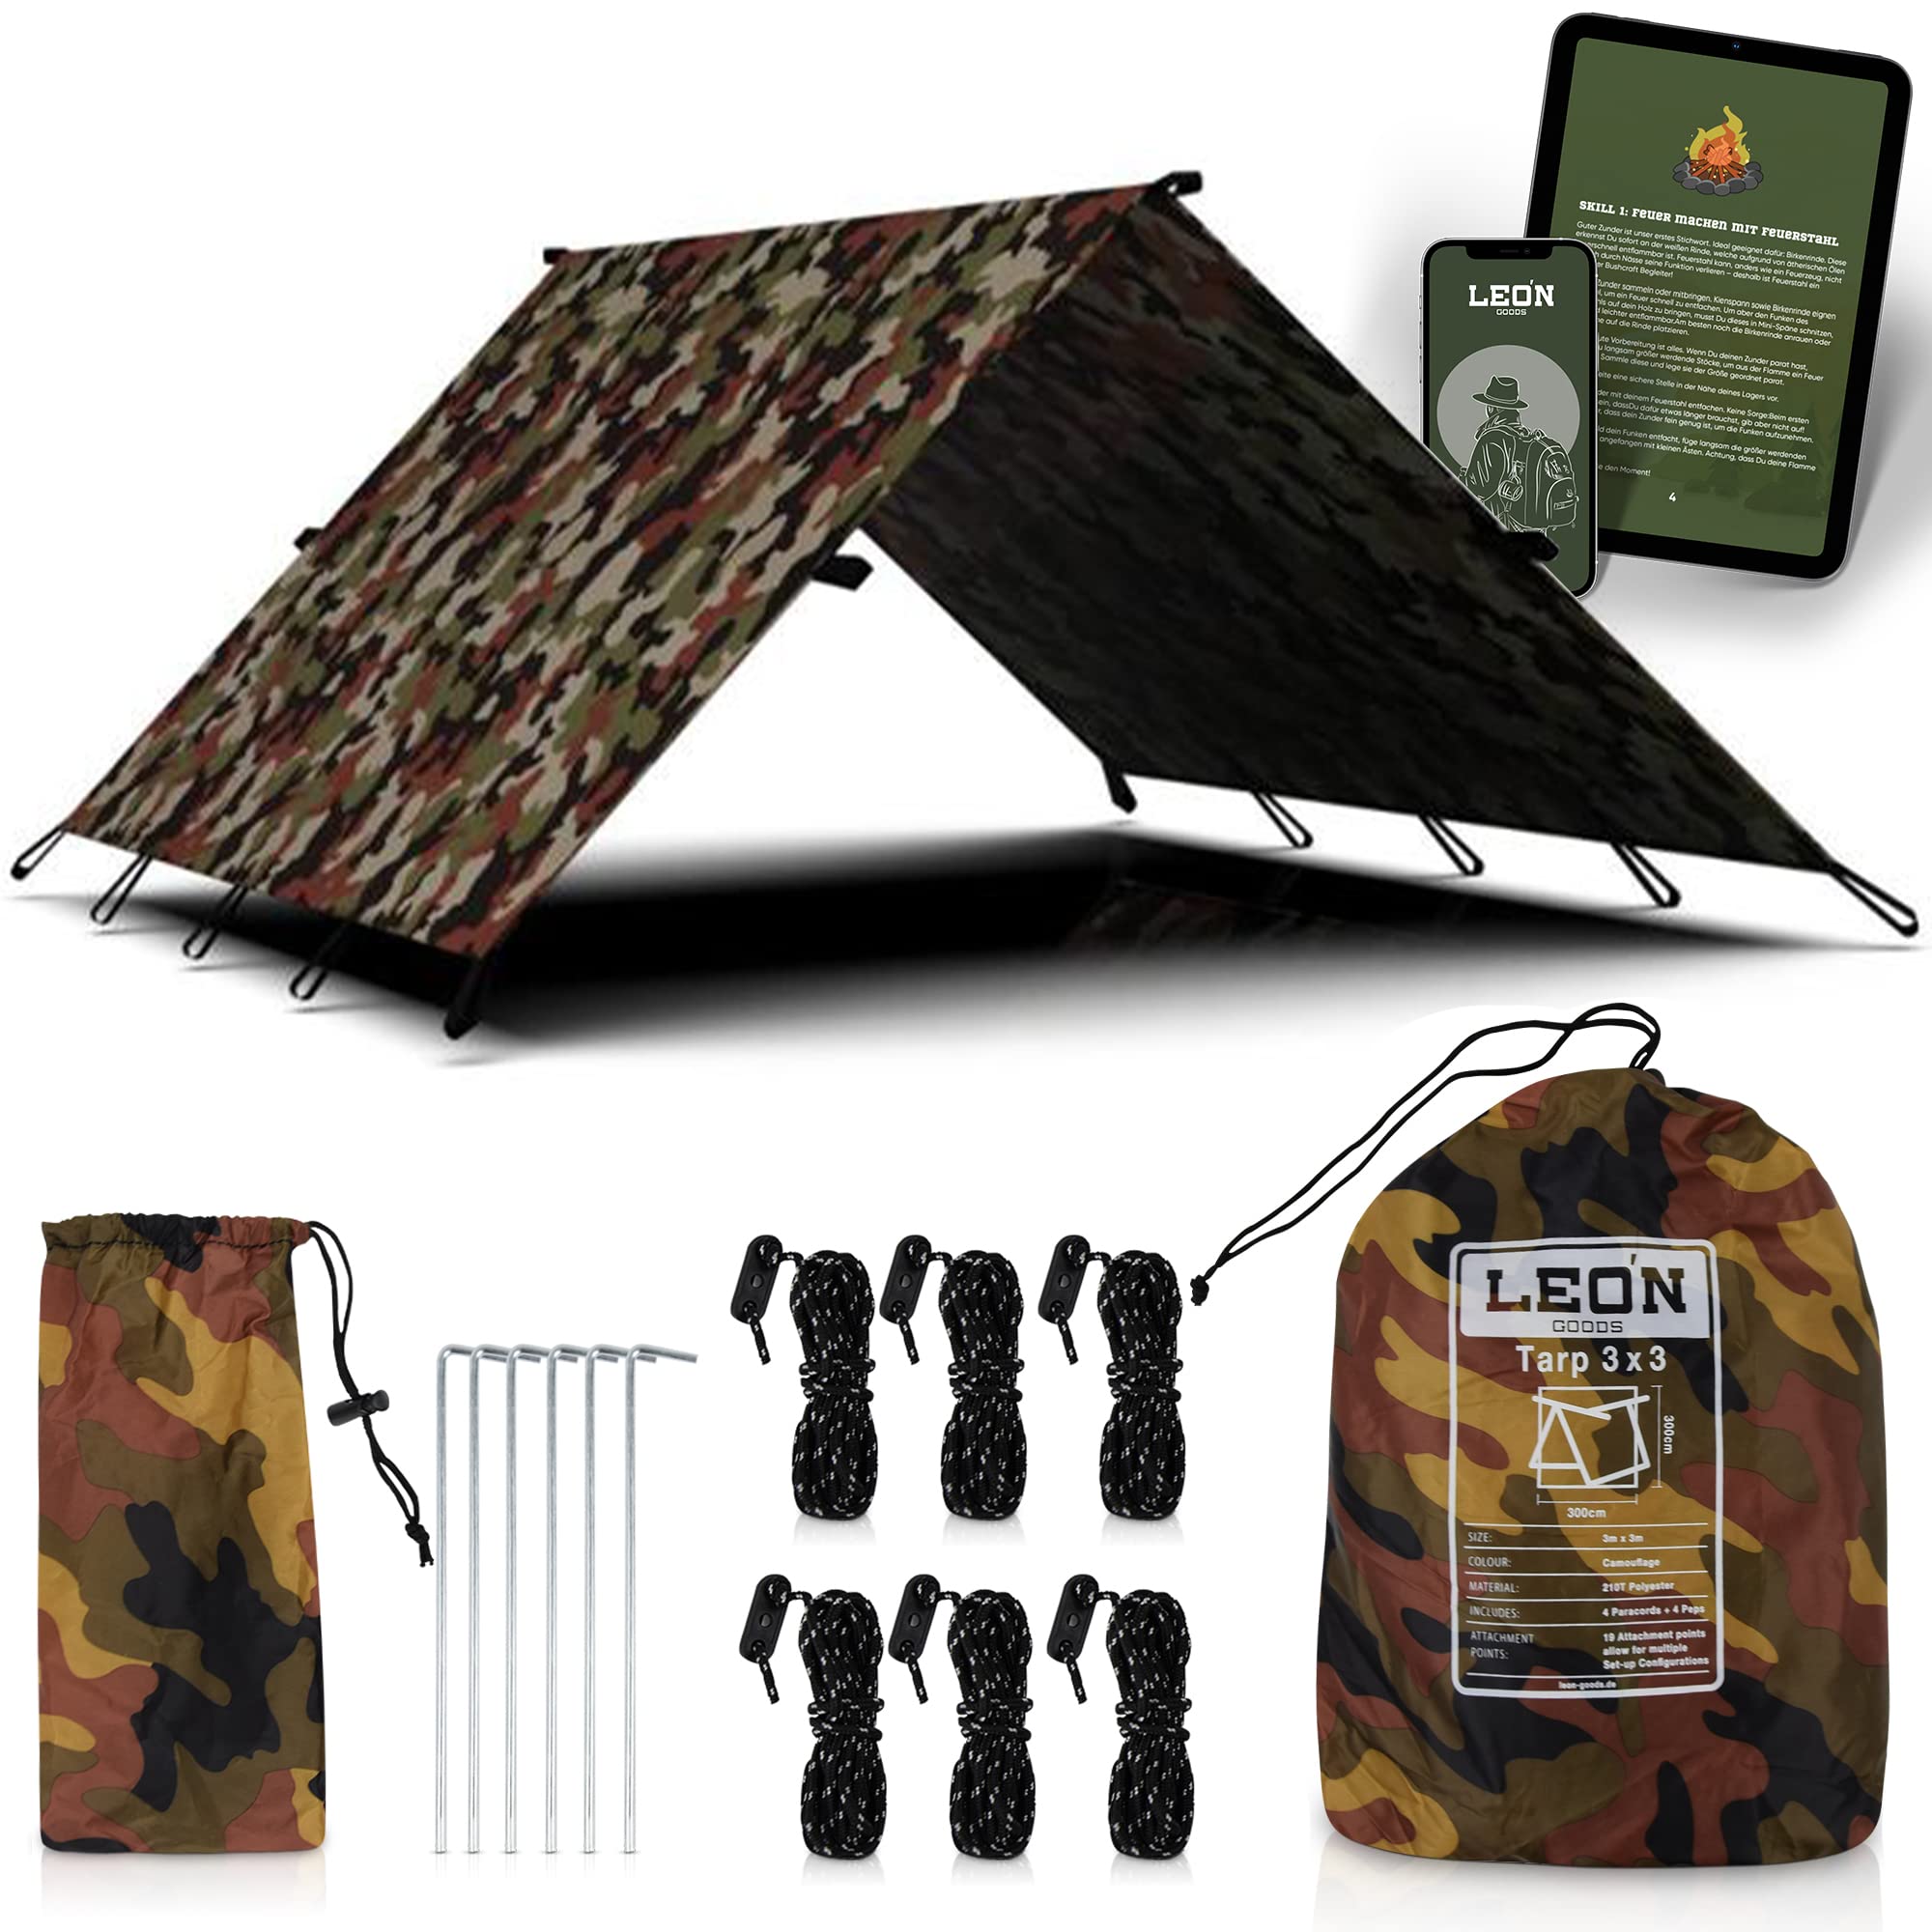 LEÓN Goods © - Das einzige Tarp mit Innenschlaufe - 3x3 Meter Åsele Tarp - Camouflage! Camping Tarp leicht und Wasserdicht für Dein nächstes Survival Abenteuer oder Camping Ausflug. + eBook!